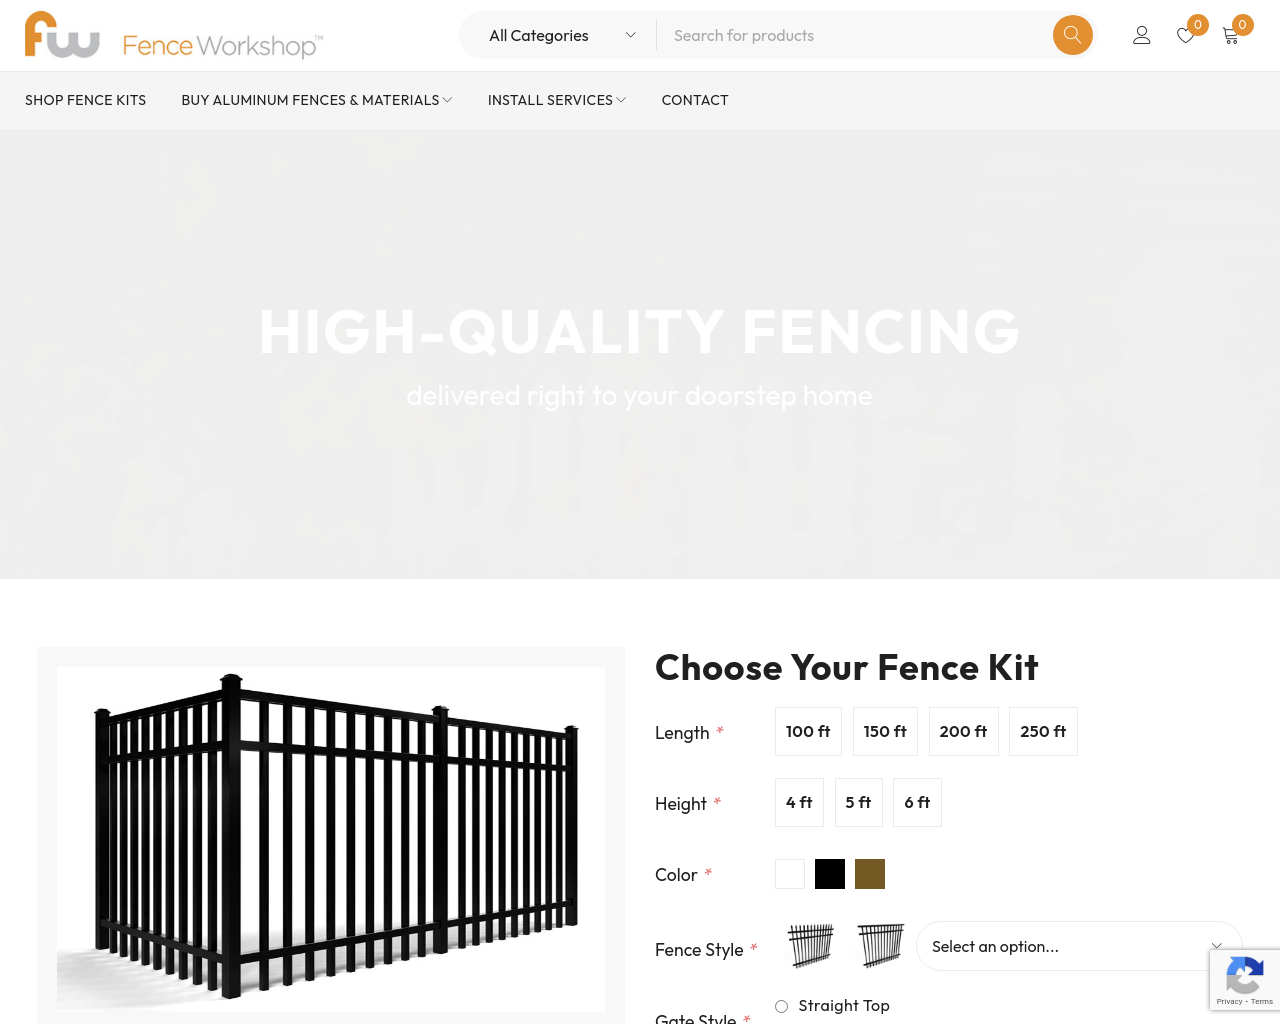 fenceworkshop.com